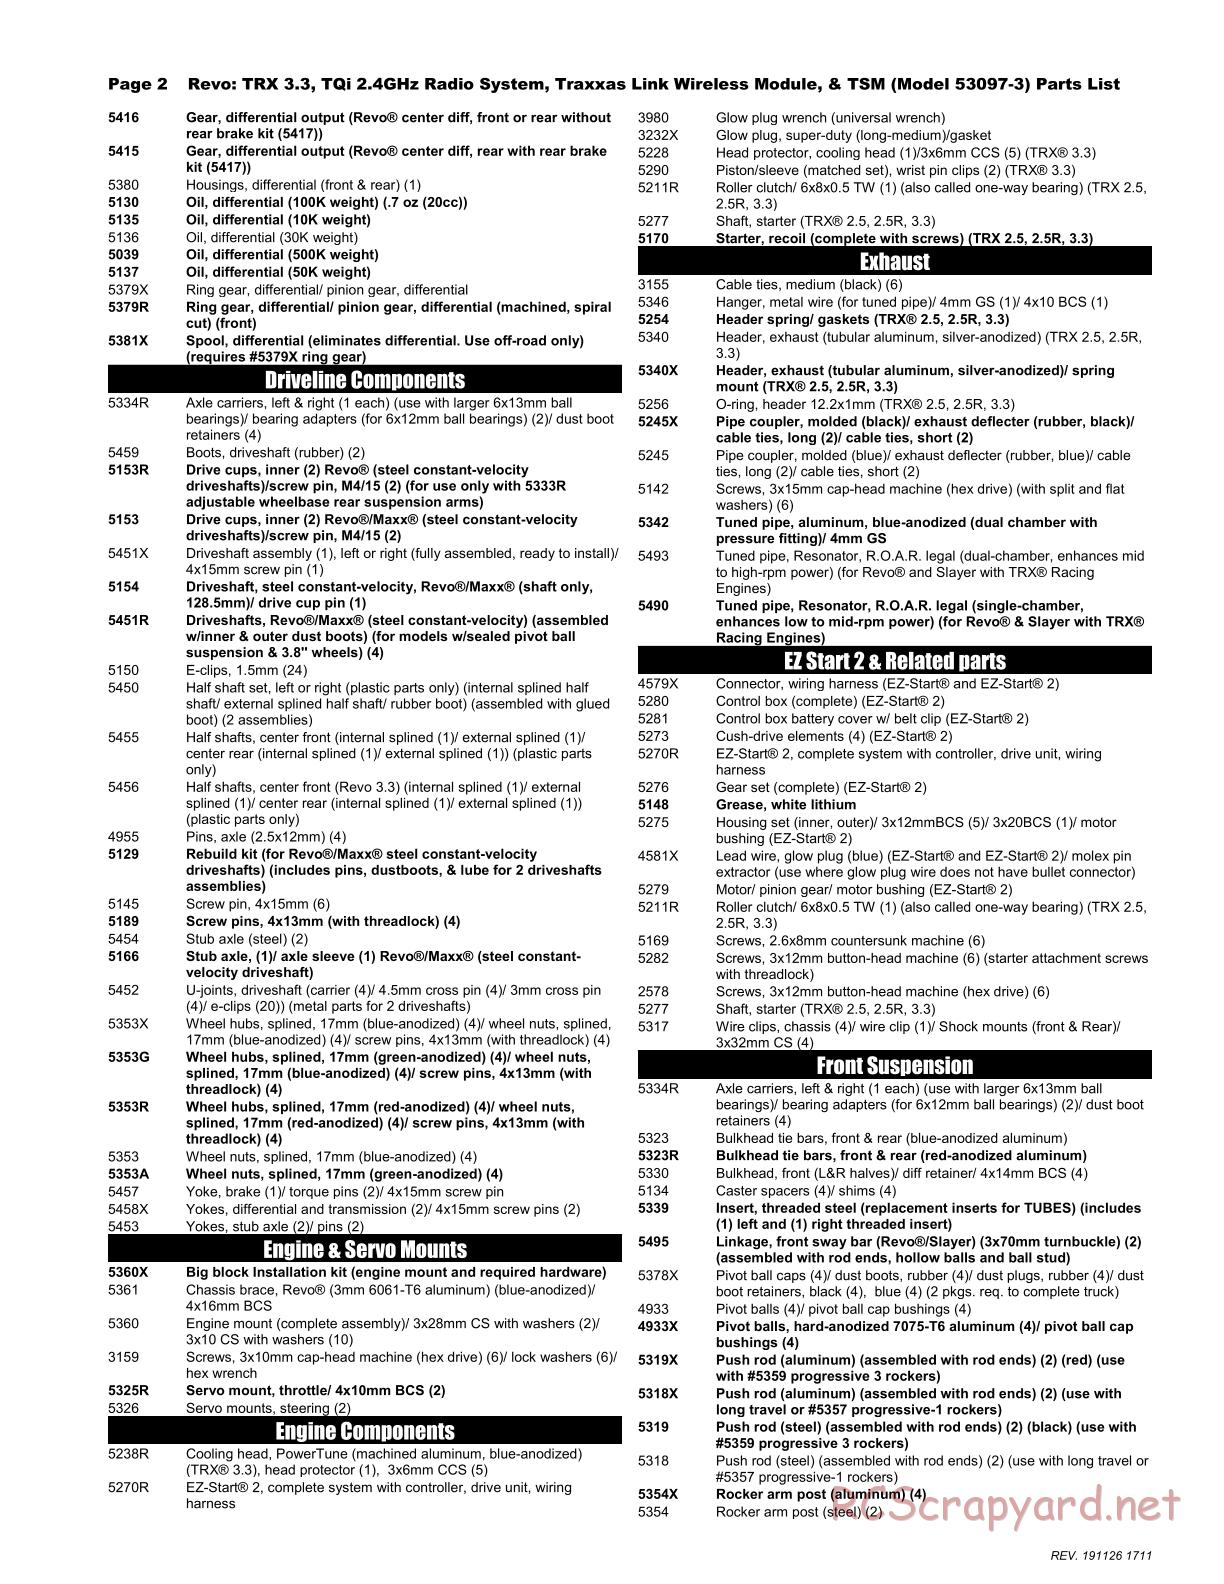 Traxxas - Revo 3.3 TSM - Parts List - Page 2